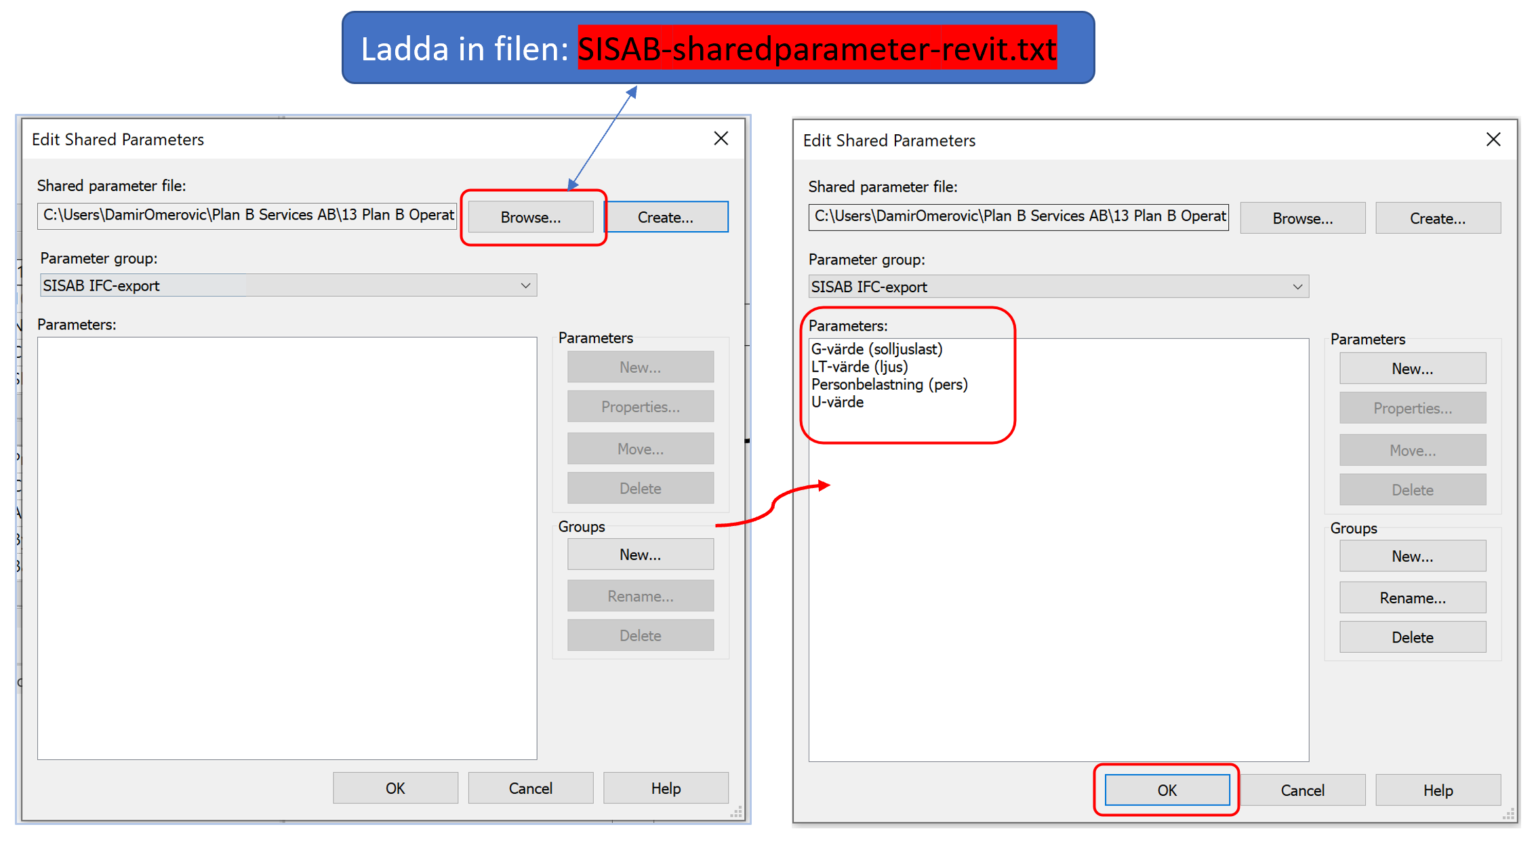 Bild som beskriver hur du anropar textfilen SISAB-sharedparameter-revit.txt